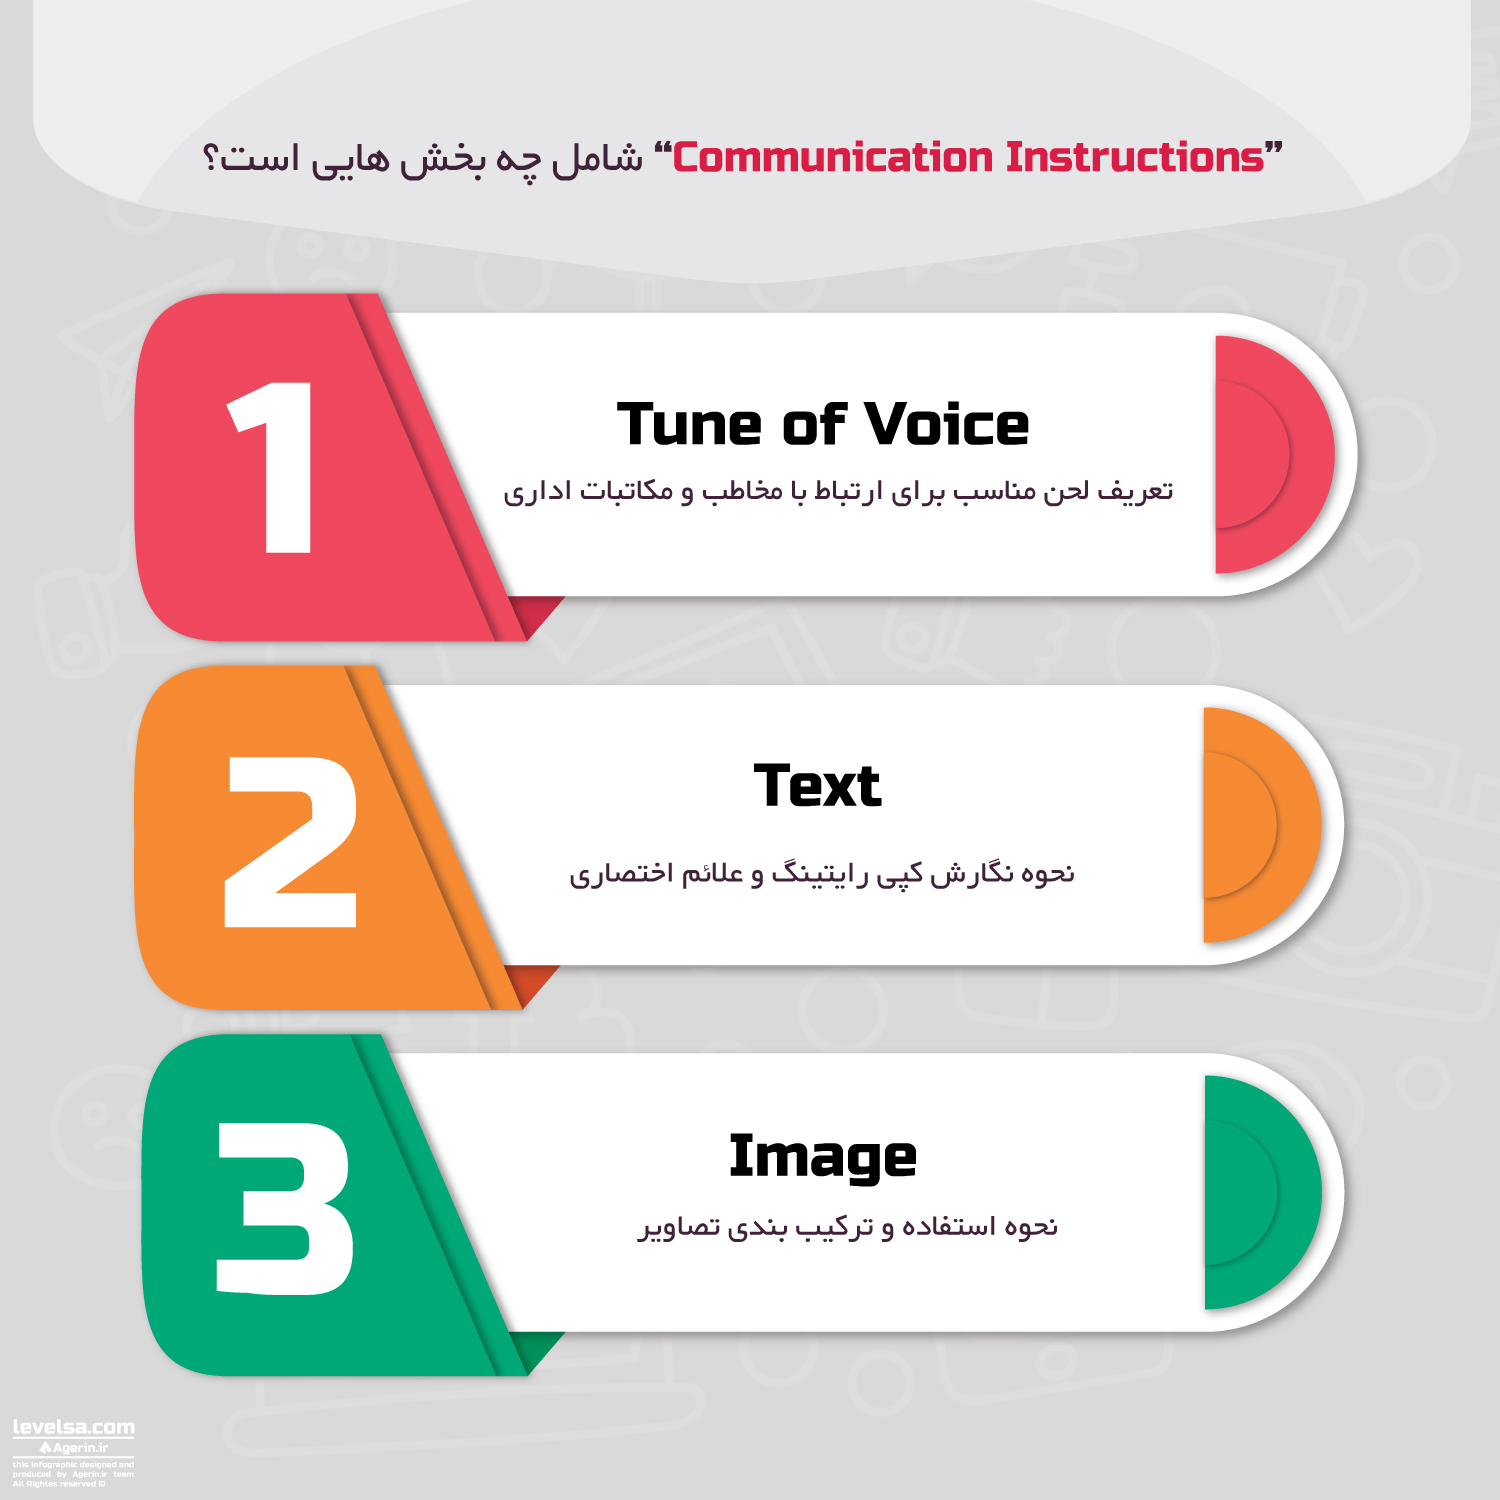 بخش Communication Instructions در برندبوک از چه زیرمجموعه هایی تشکیل می شود؟